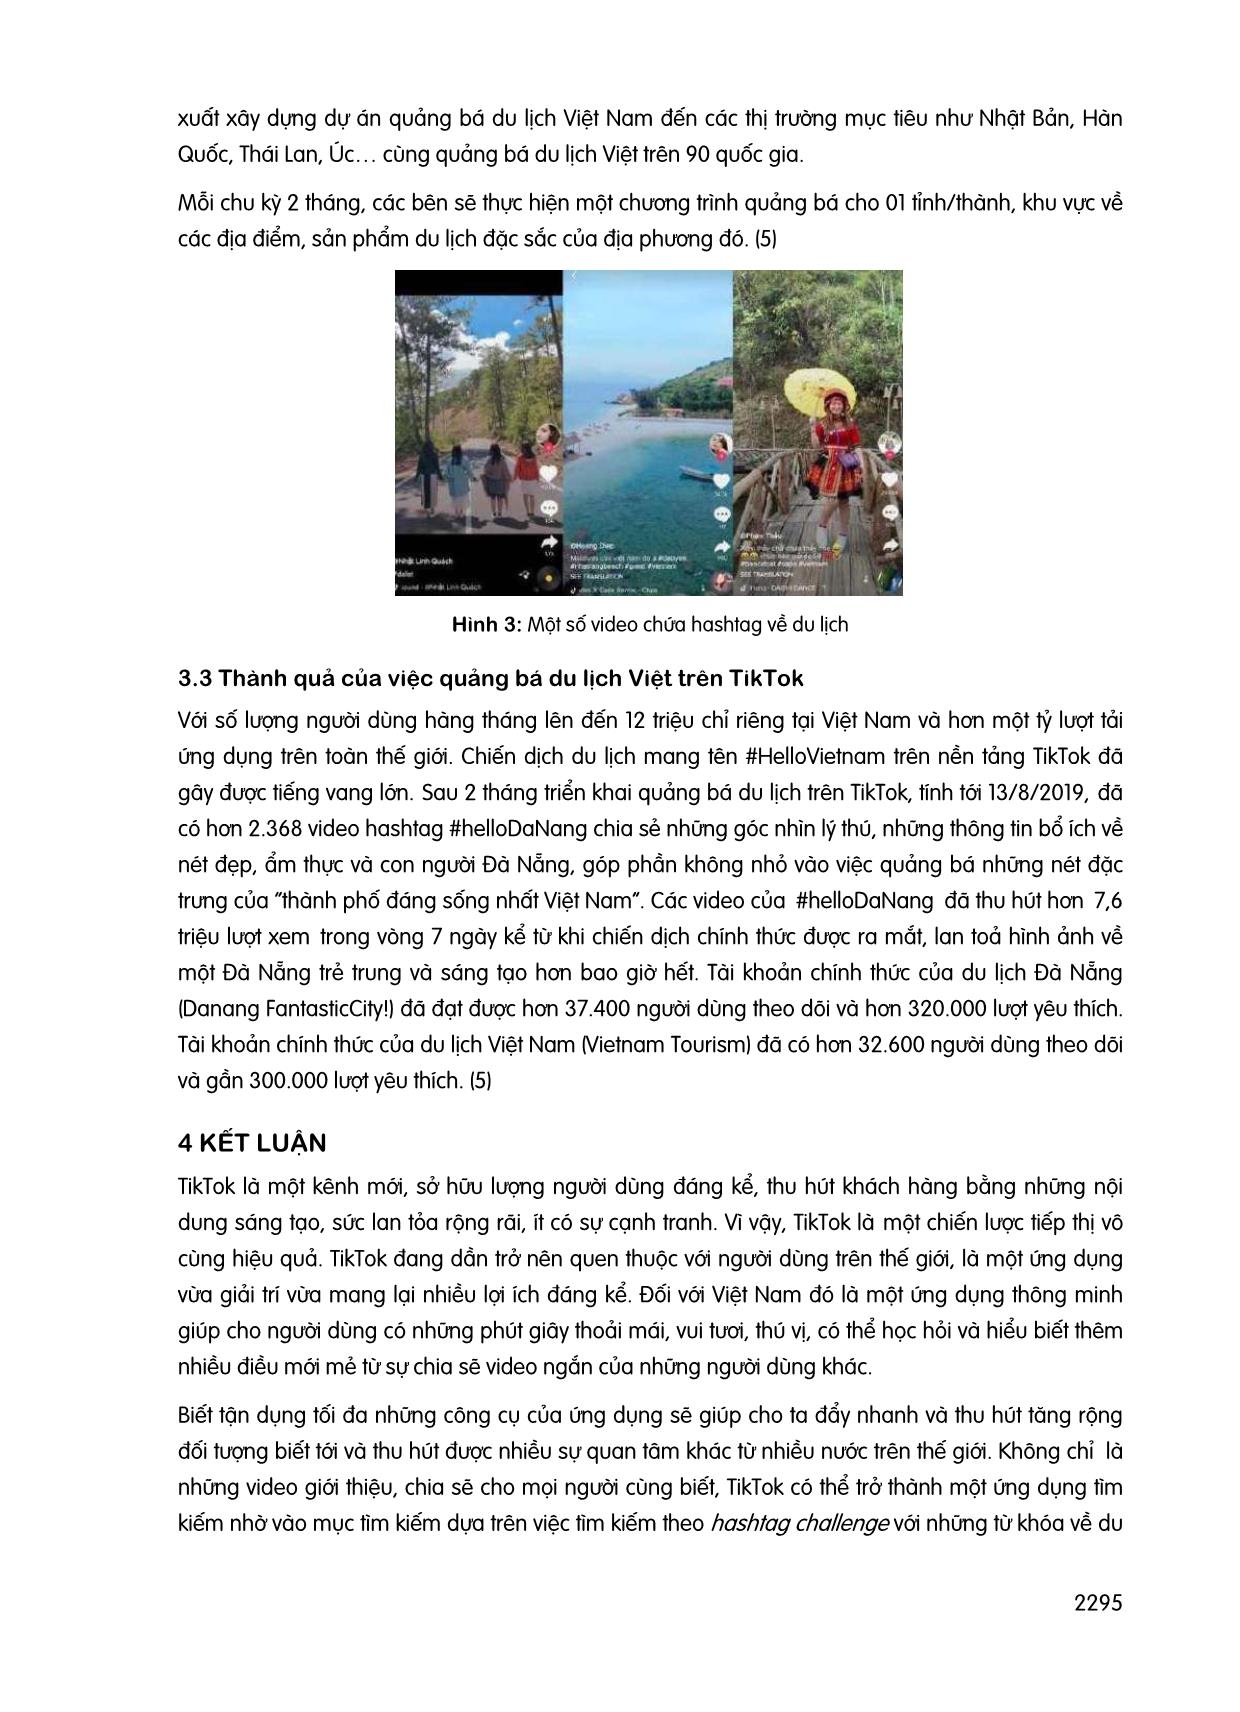 Du lịch Việt trên nền tảng Tiktok trang 5